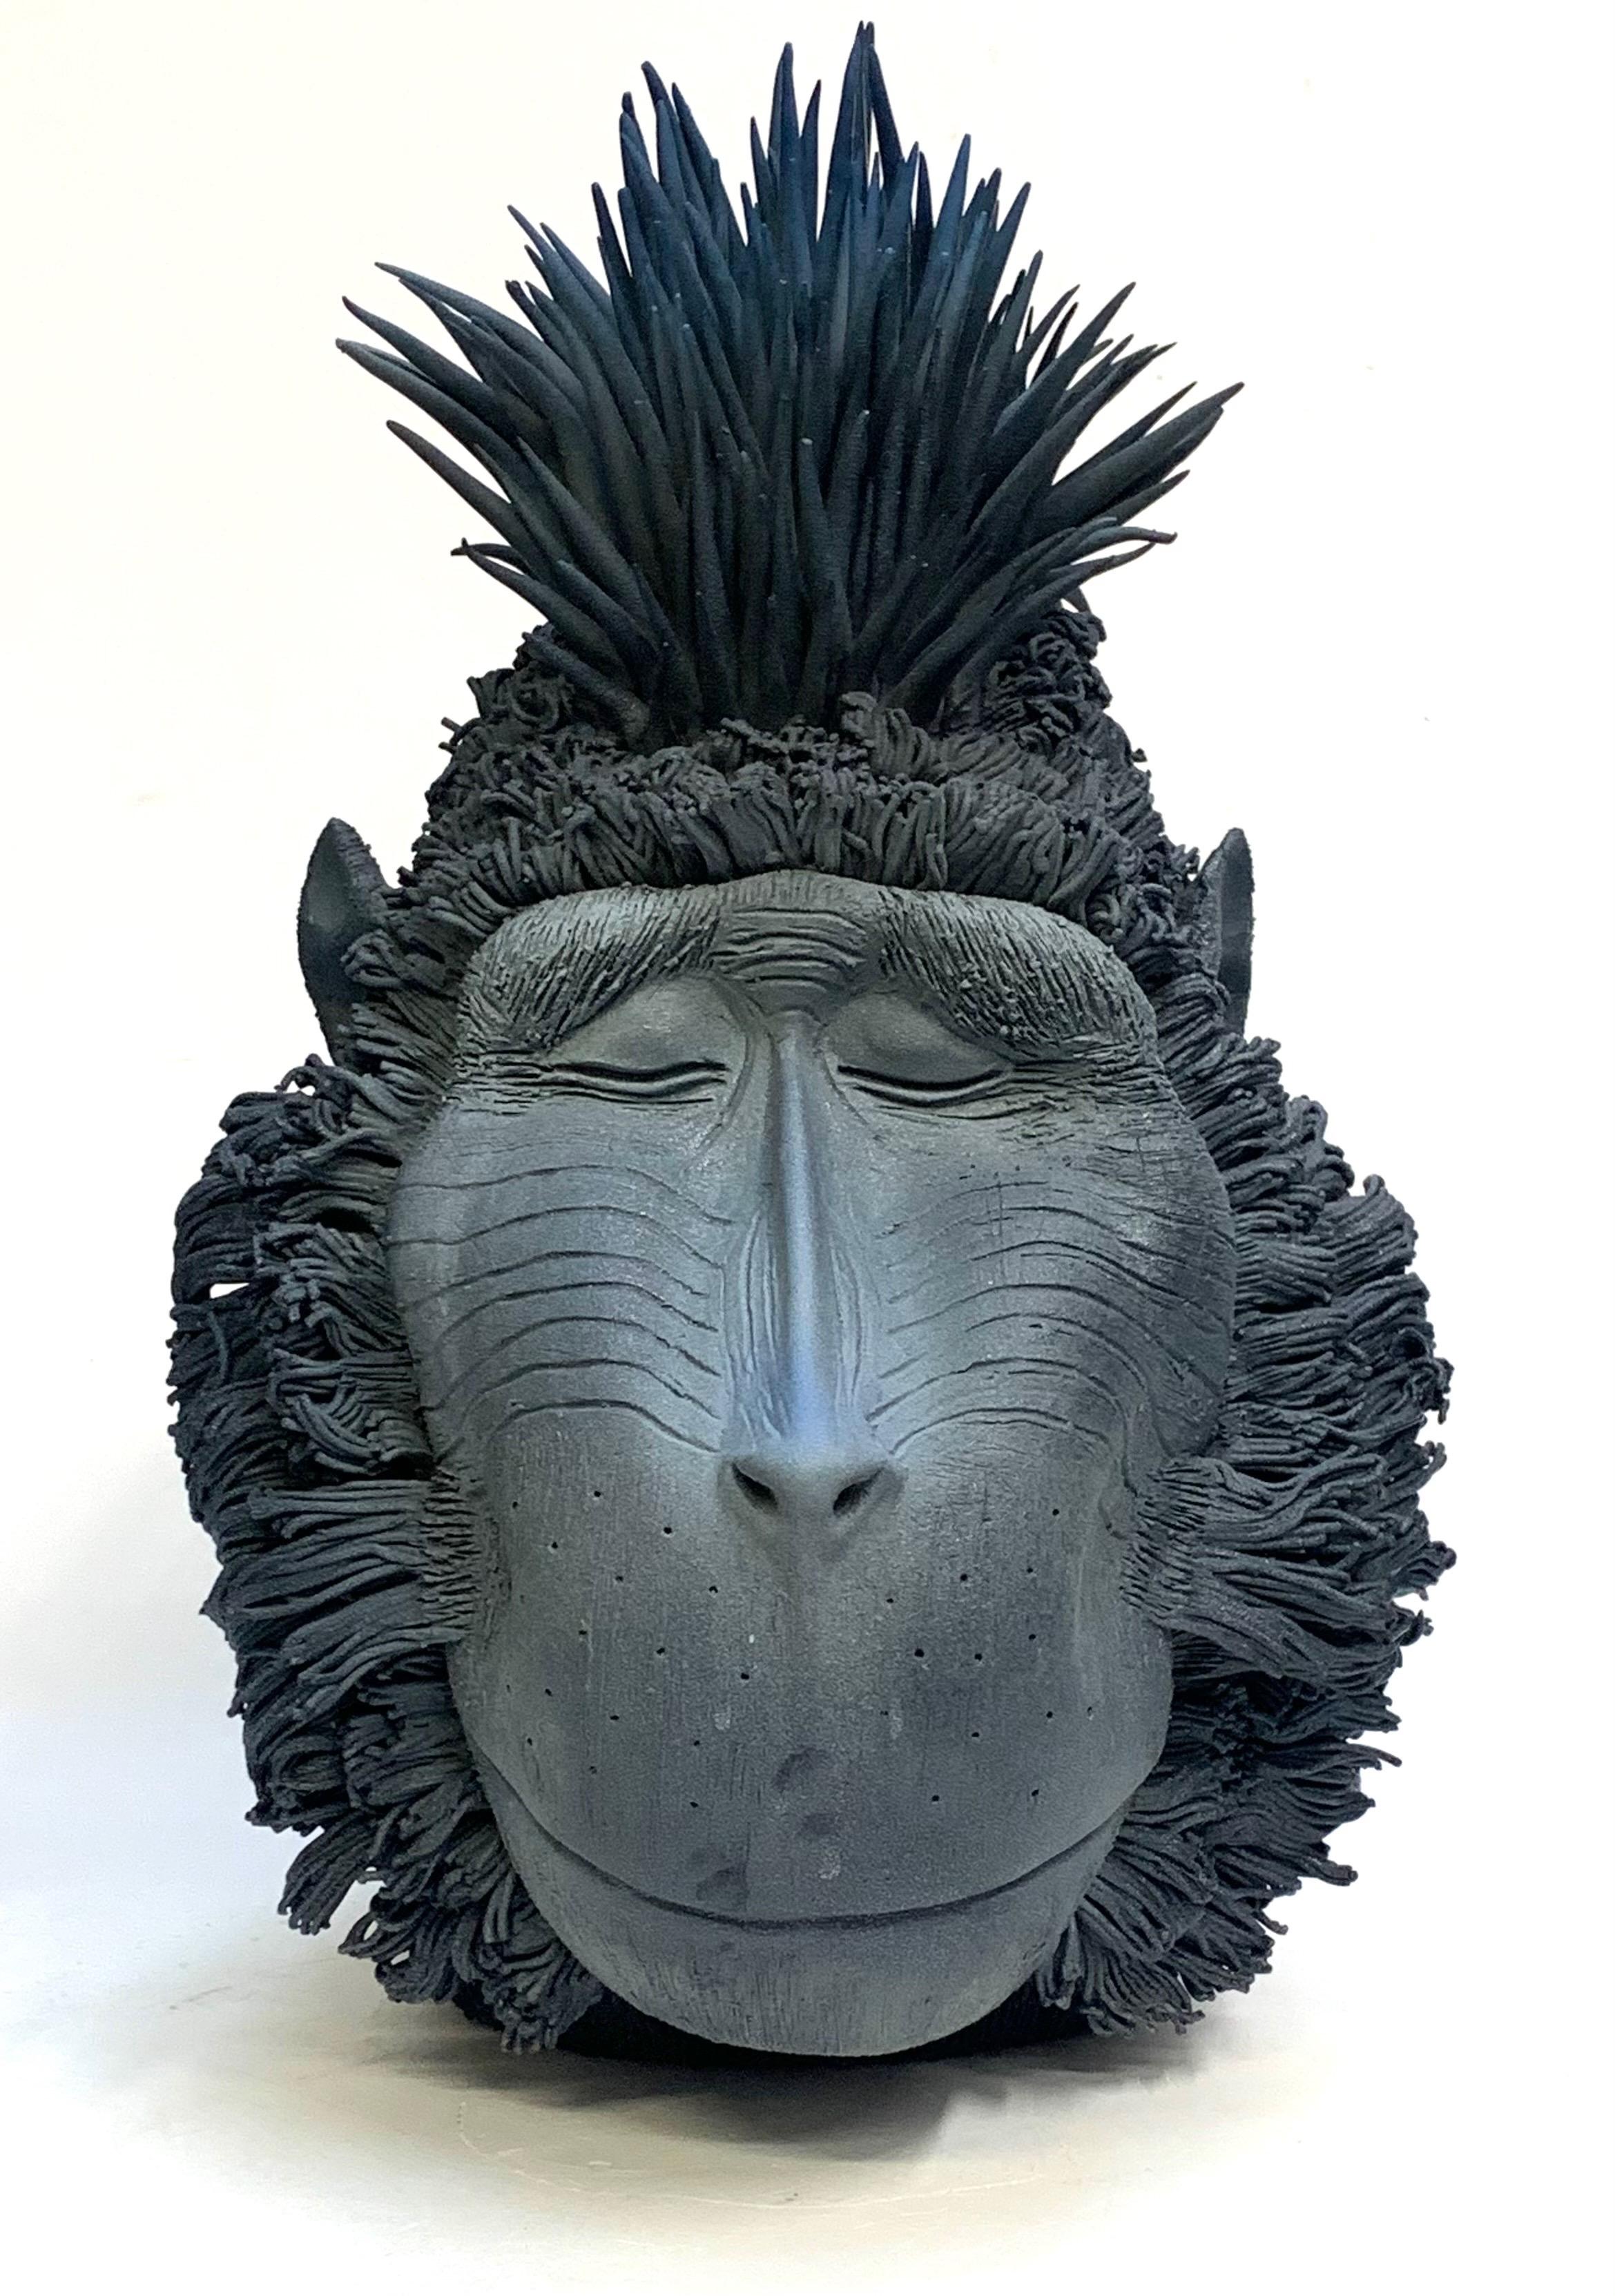 Das Stück ist eine einzigartige Darstellung eines Orang-Utans auf moderne Weise.
Unsere Designerin fertigt diese Stücke vollständig von Hand an.
     